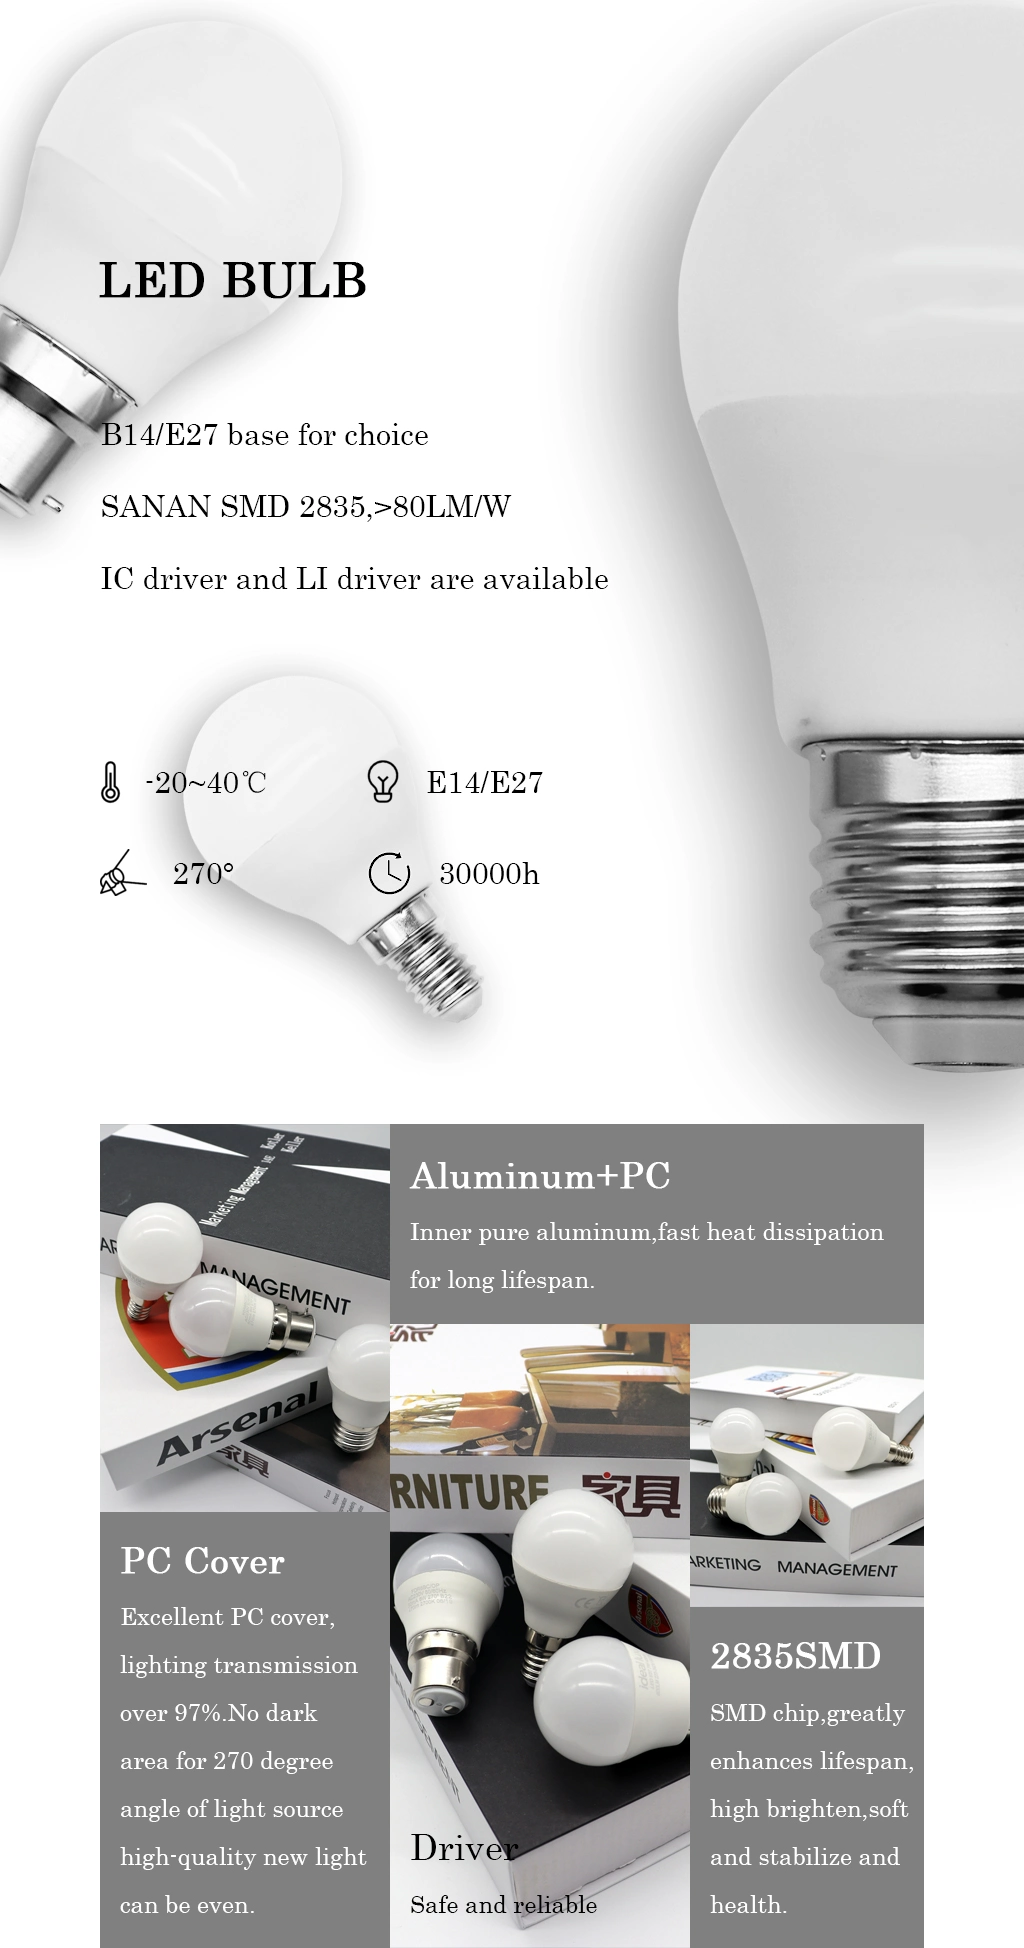 3W/4W/5W/6W E14/E27 Dimmable LED Bulb with CE RoHS (GR855D-G45)